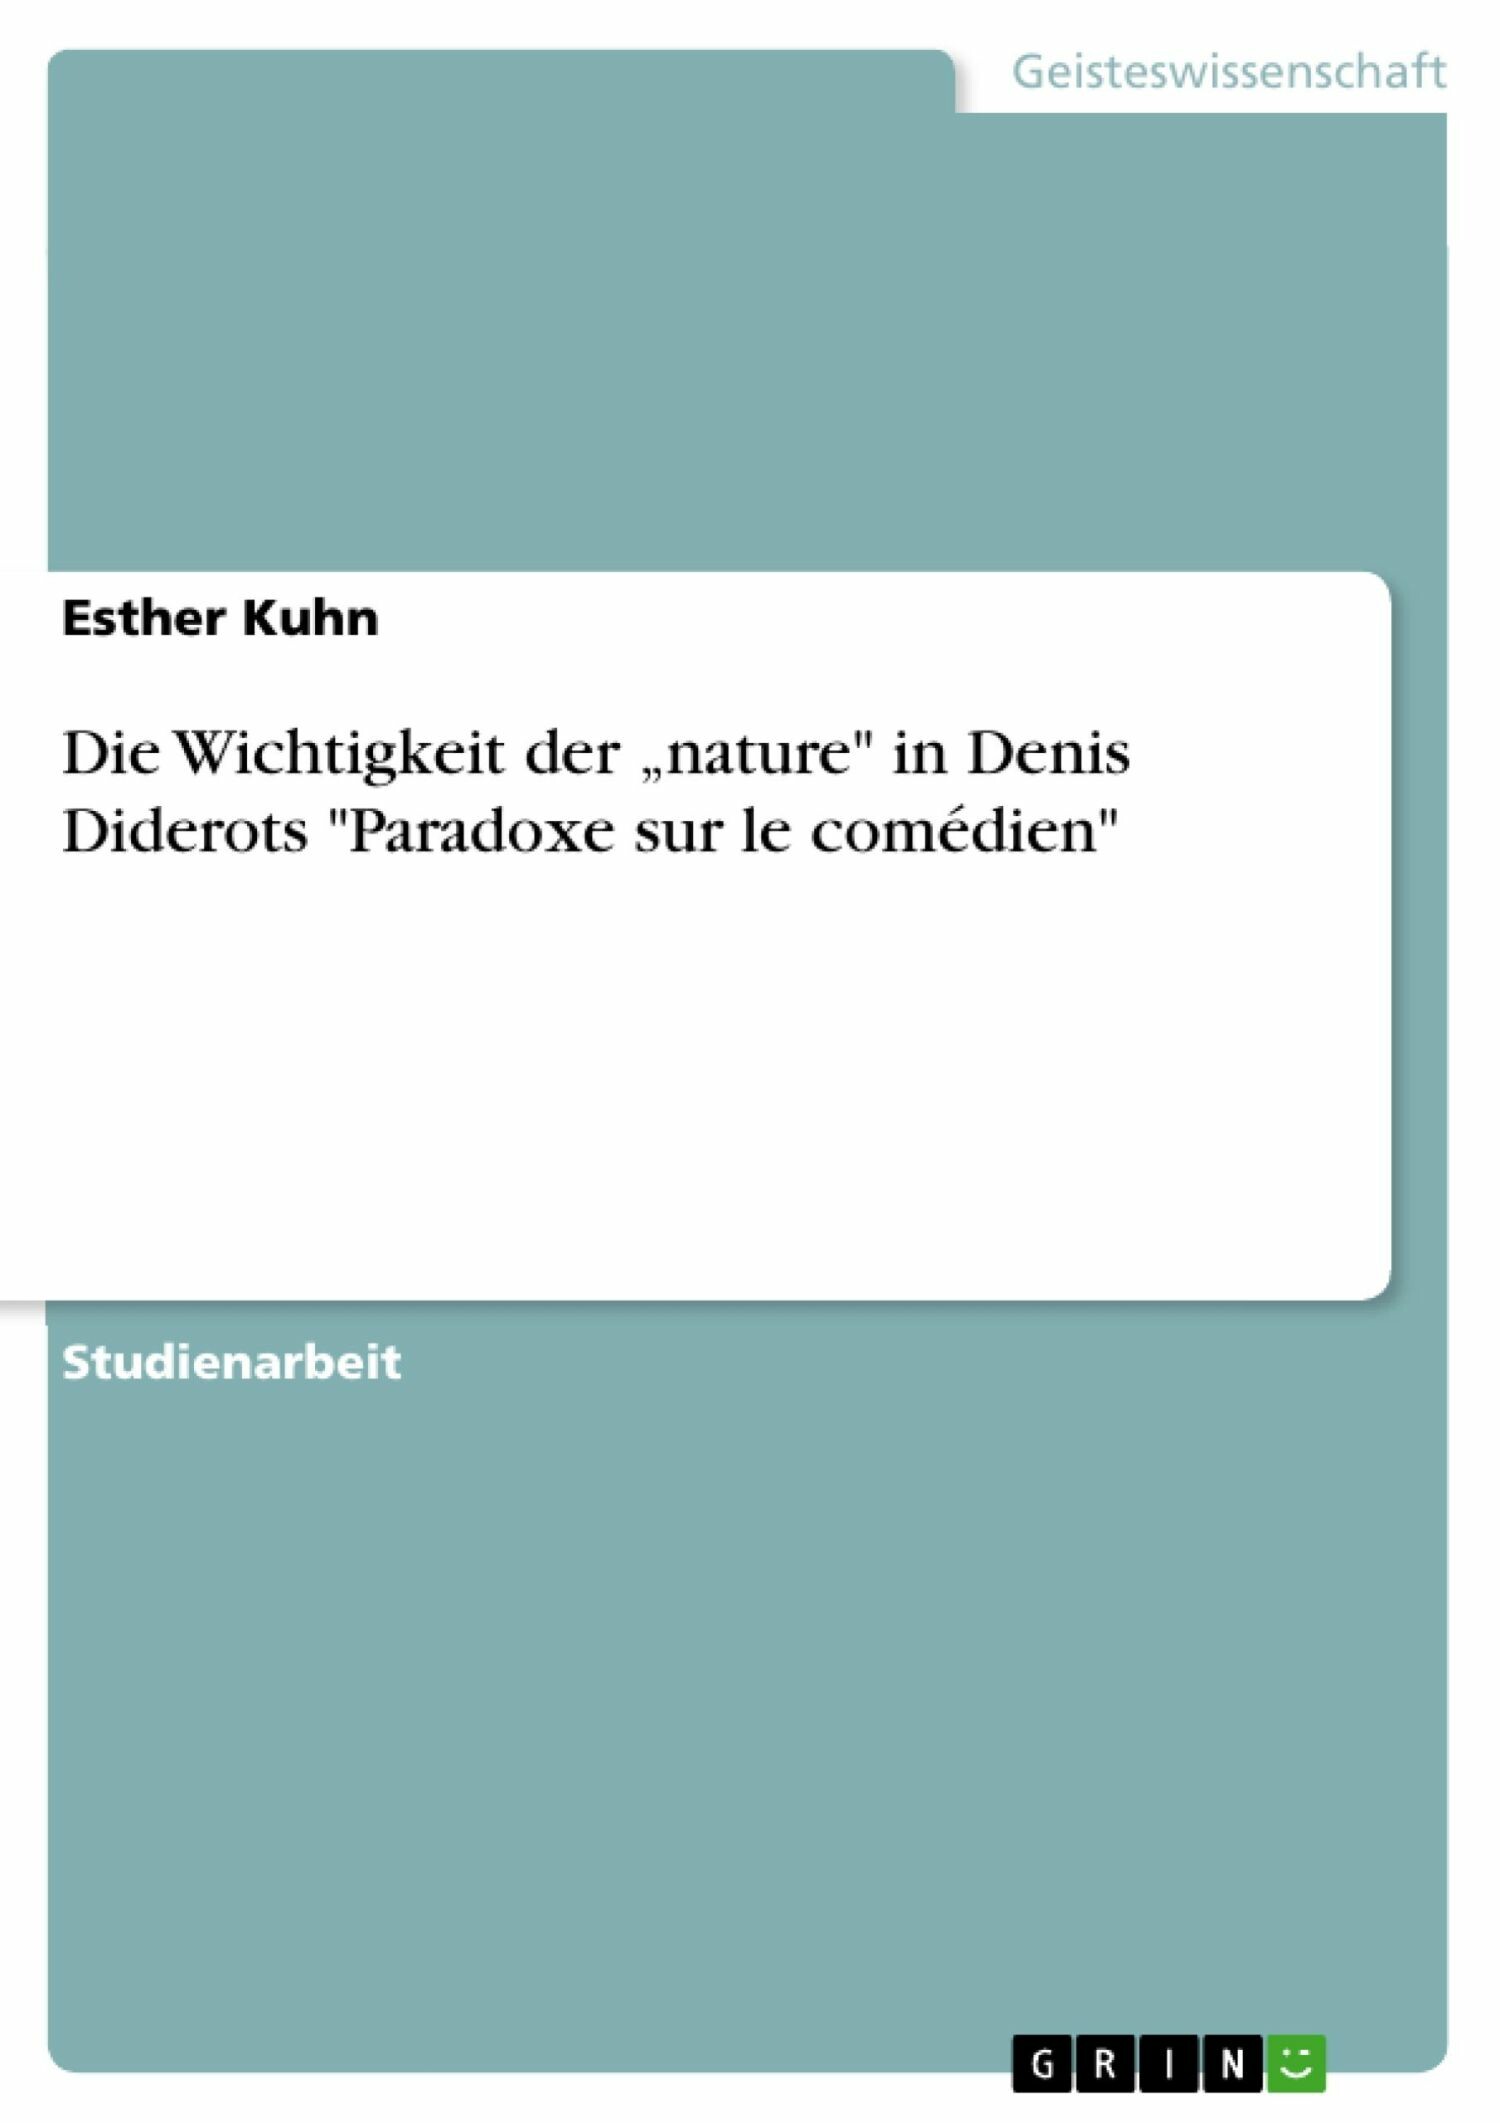 Die Wichtigkeit der 'nature' in Denis Diderots 'Paradoxe sur le comédien'